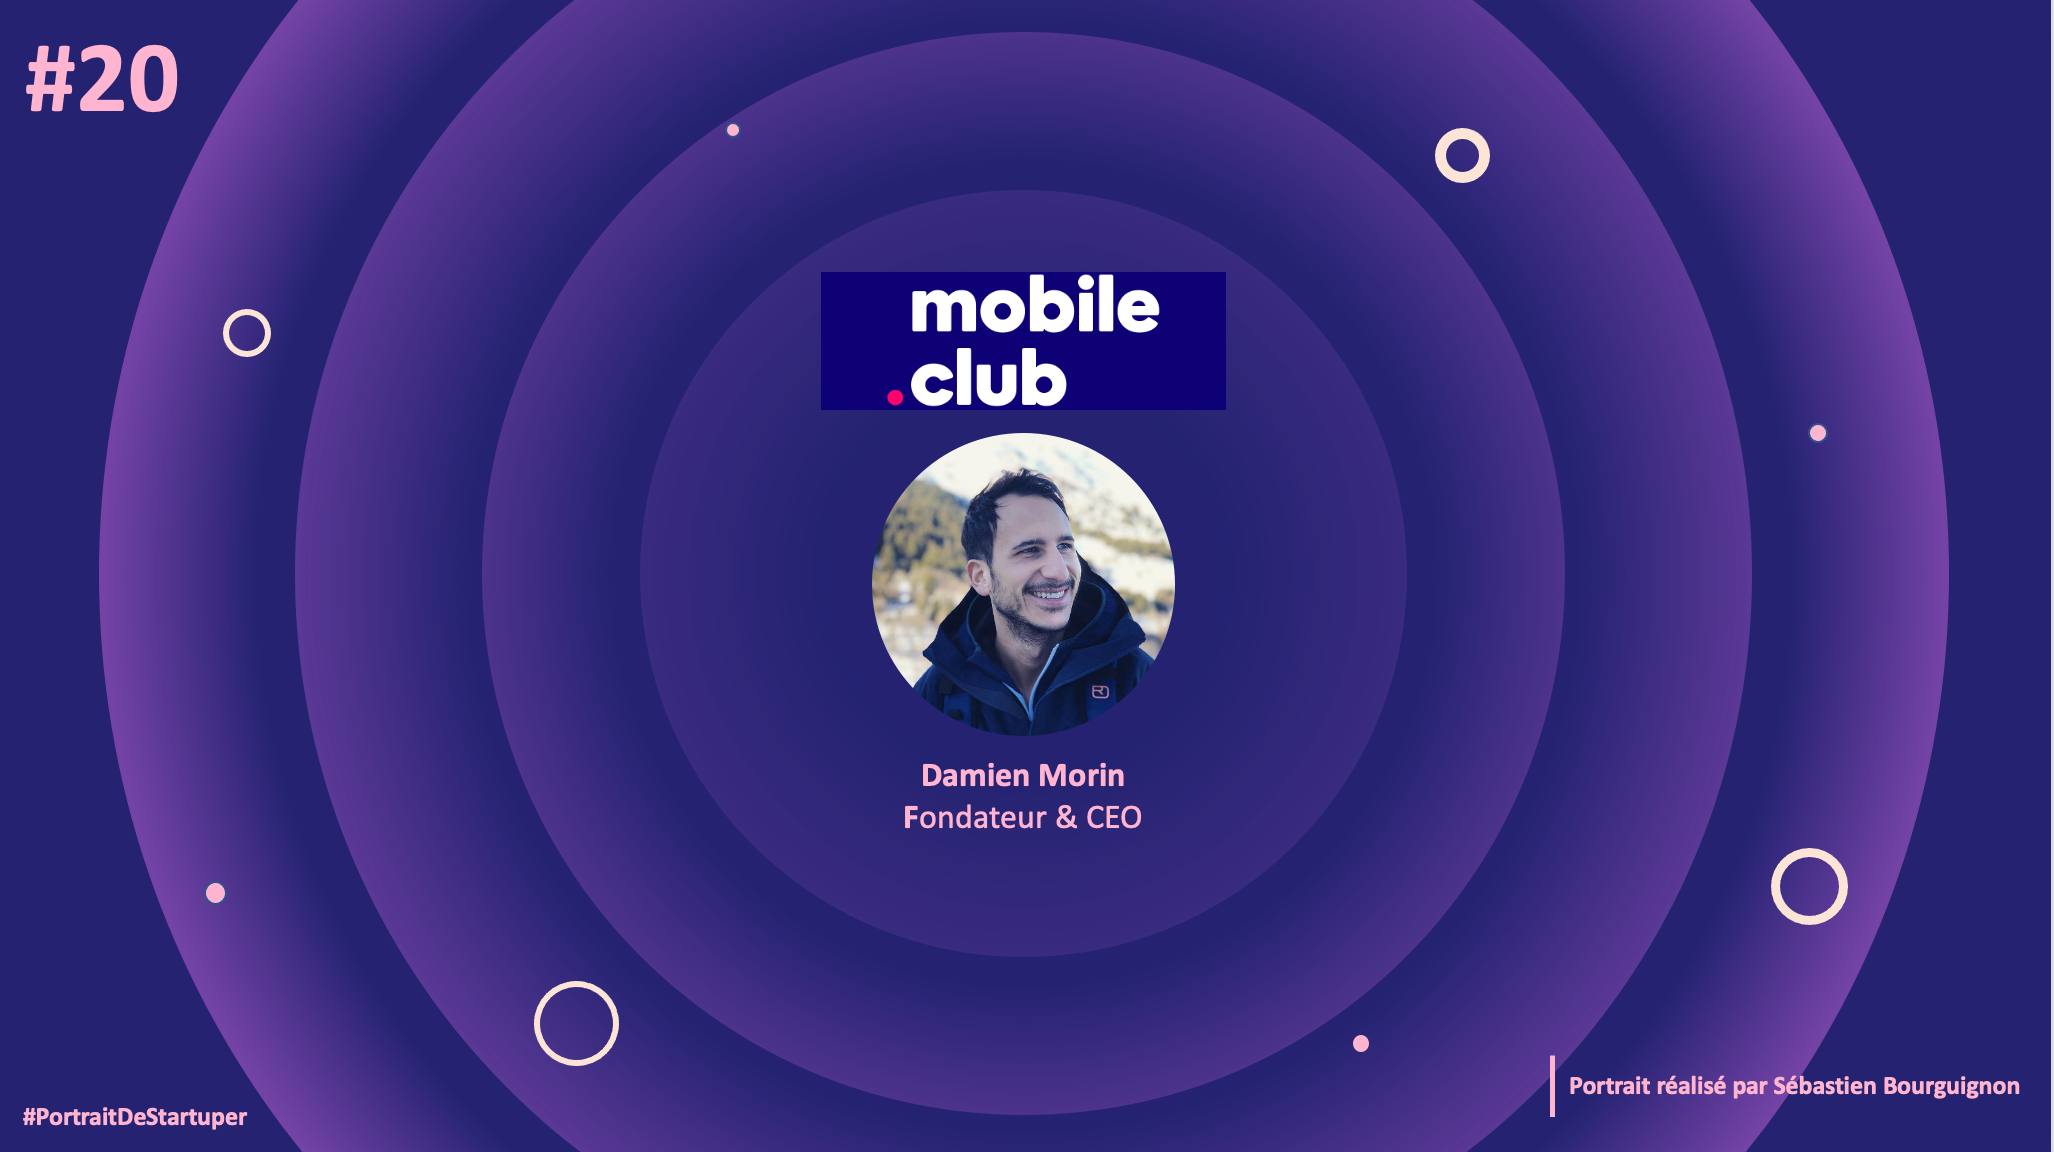 mobile.club